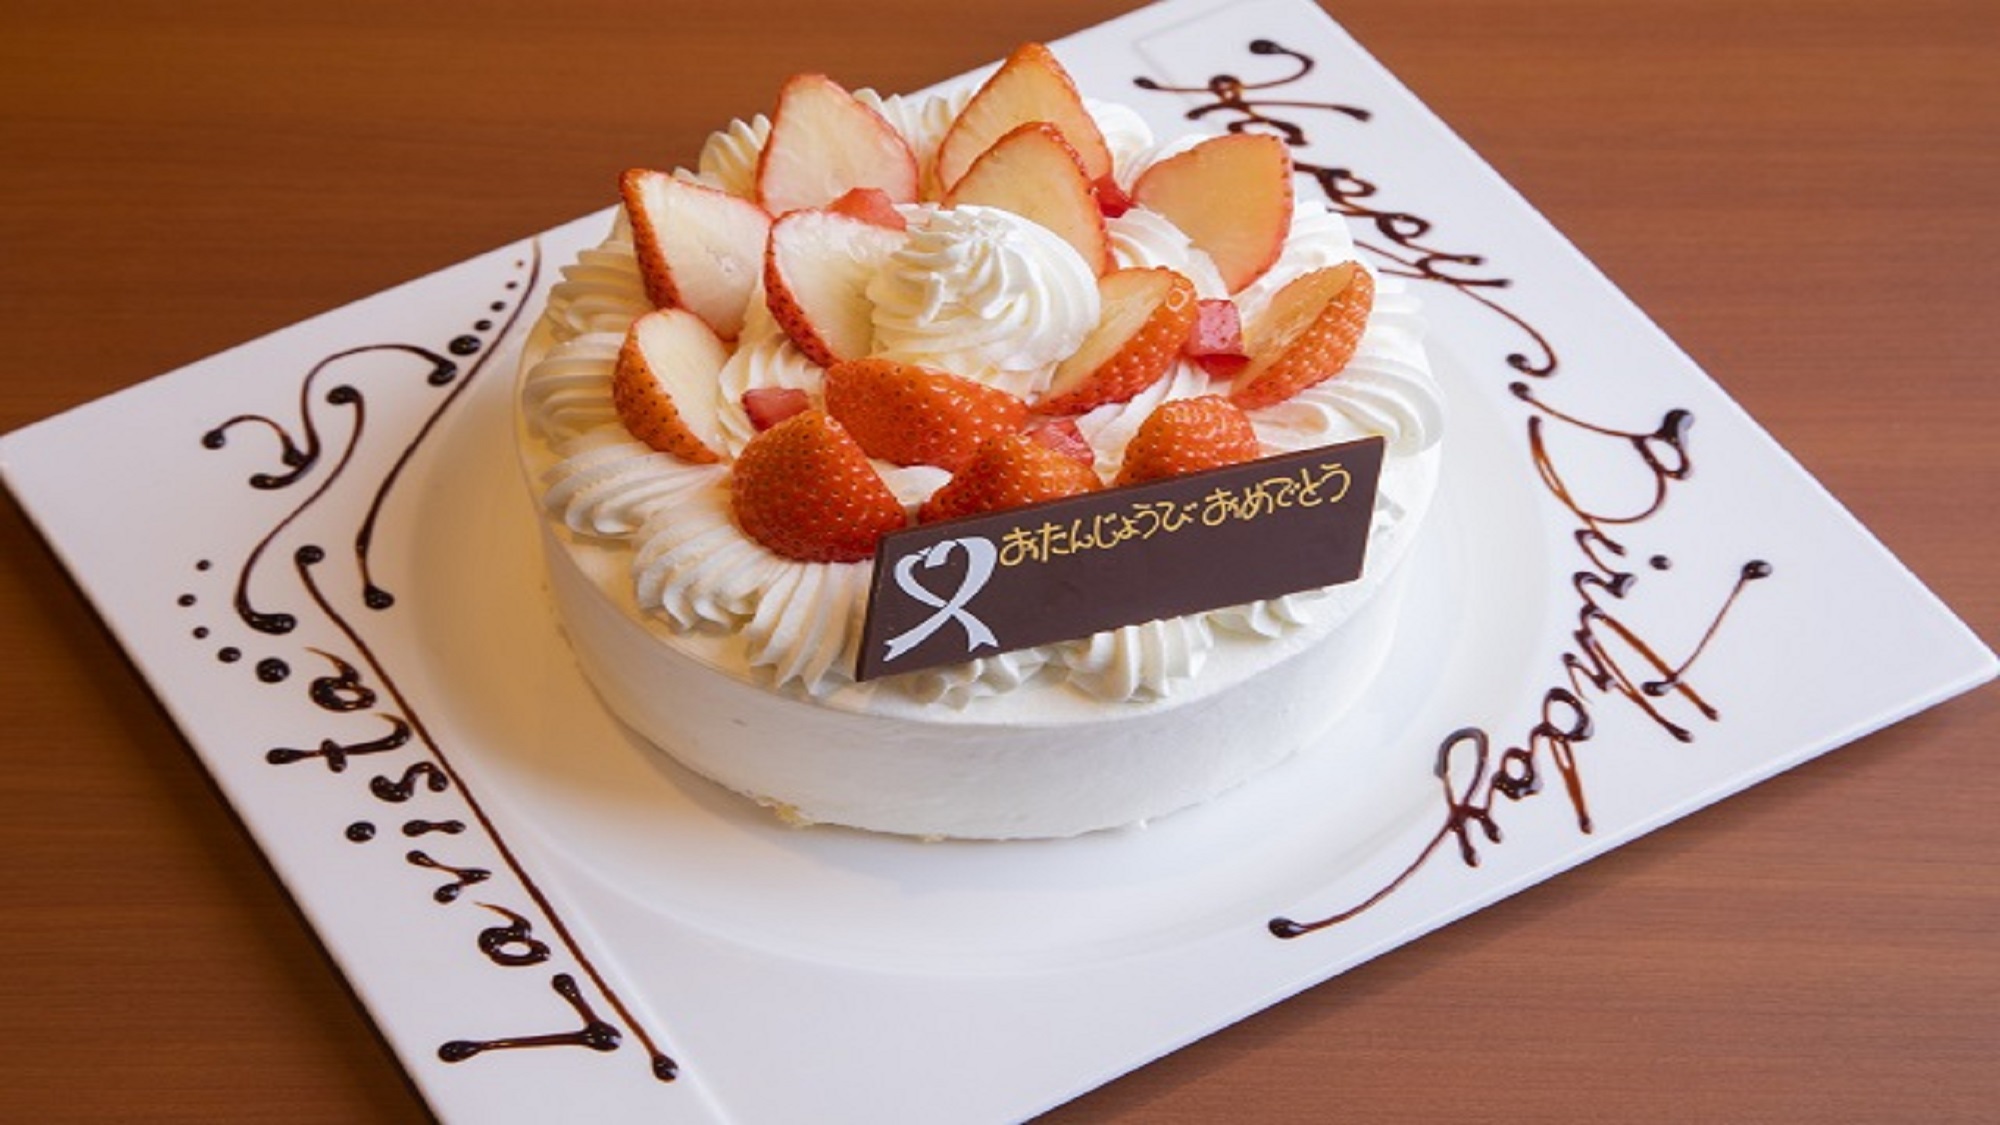 お誕生日や記念日に。デコレーションケーキをご用意(ご予約制)